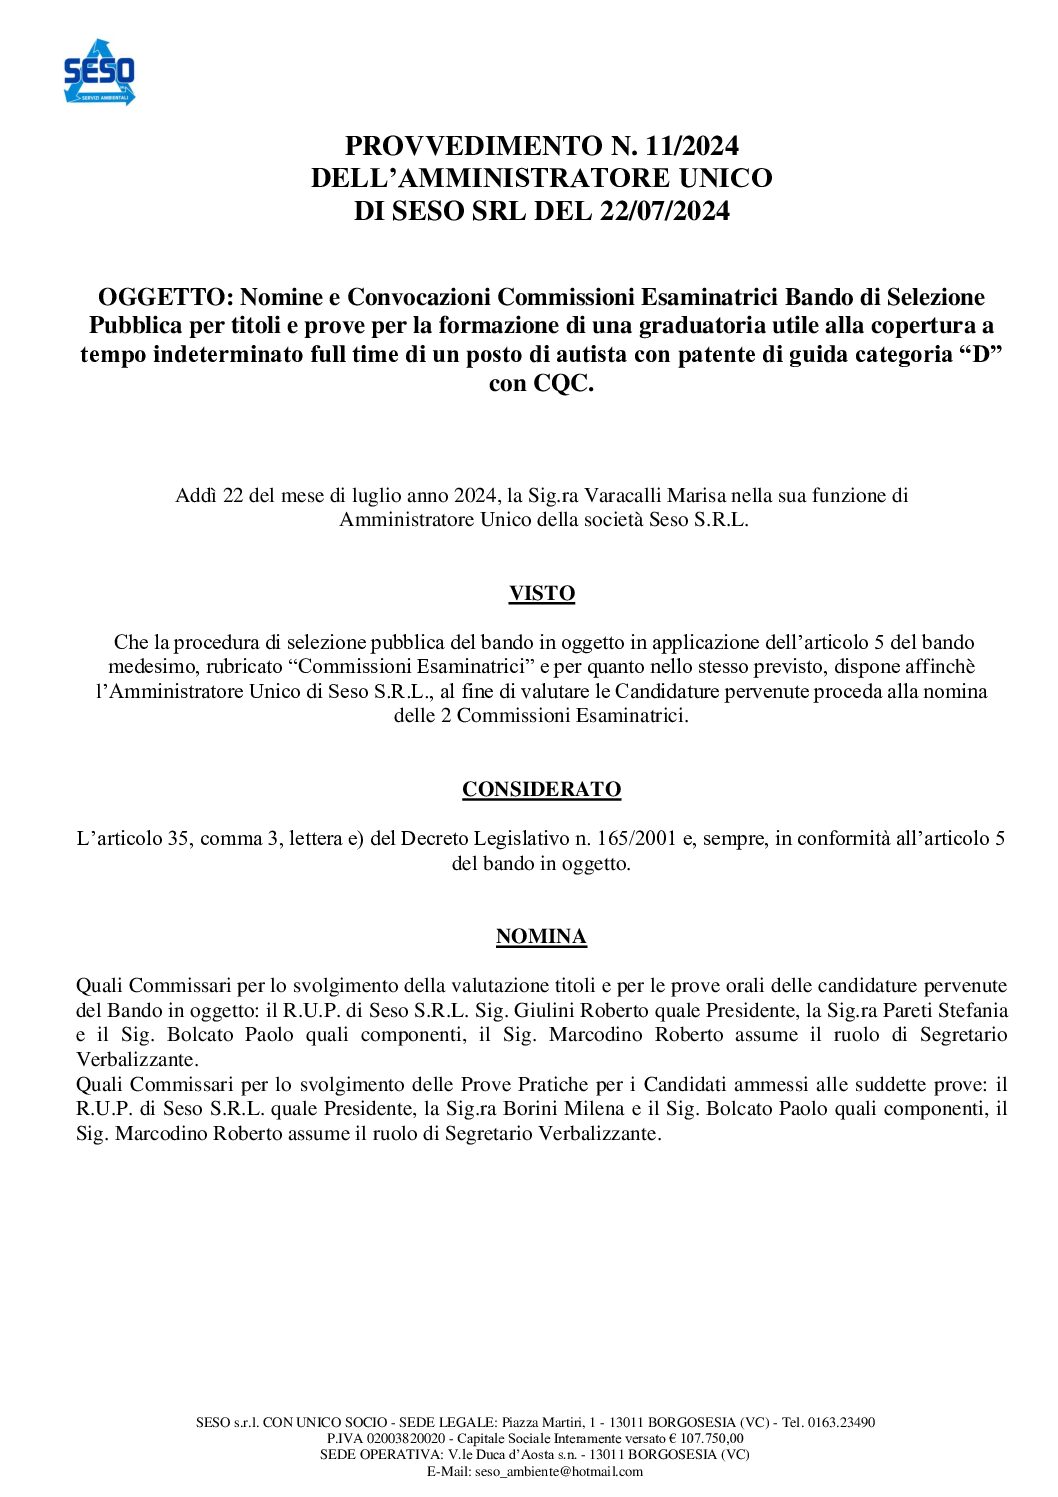 Nomina e Convocazioni Commissioni concoro selezione Autista patente D con CQC